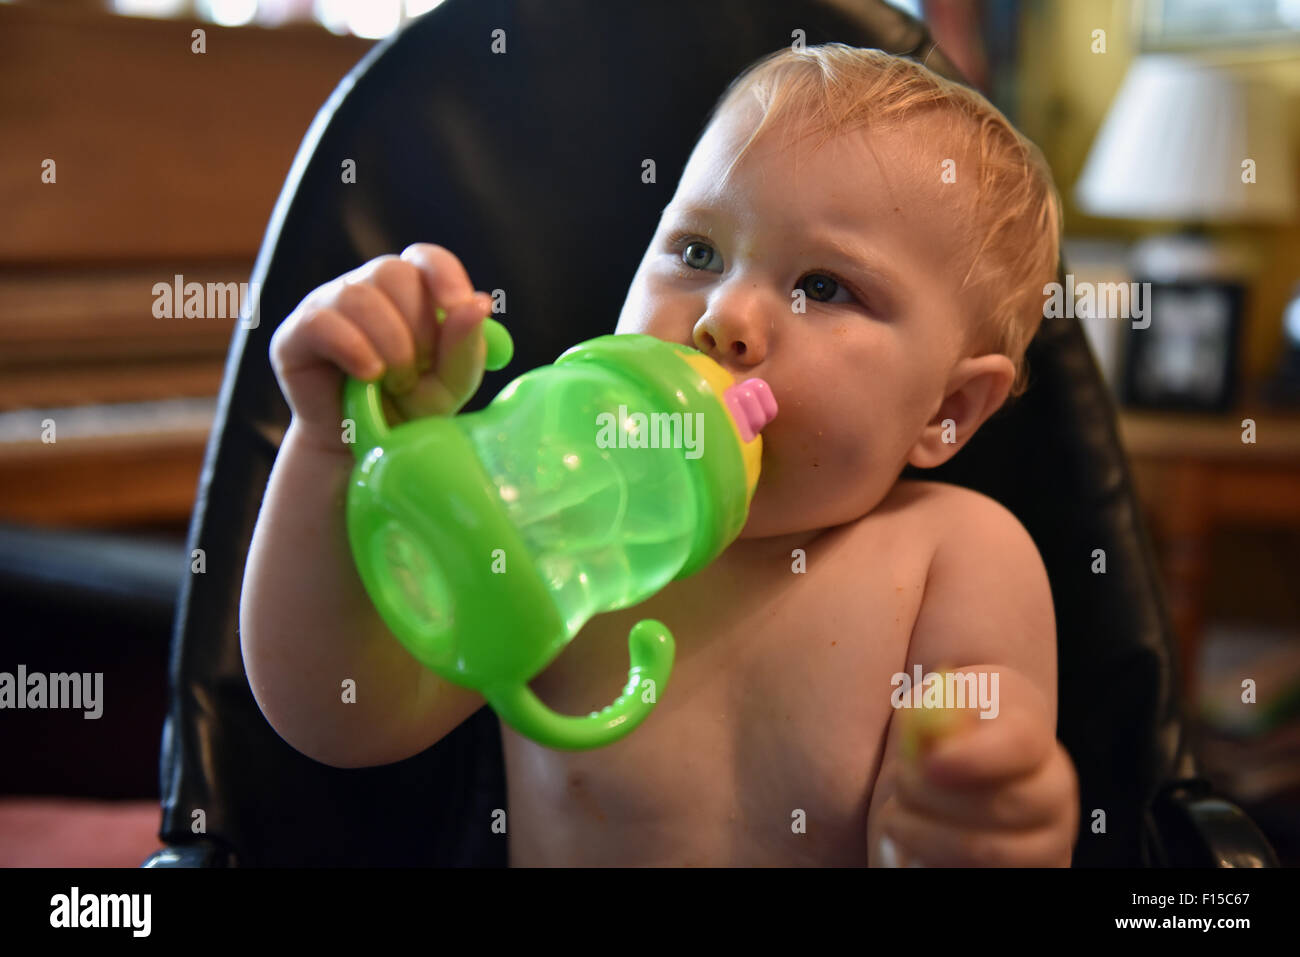 Ein elf Monate altes Baby sitzen in ihrem Hochstuhl Trinkwasser aus einem hellen grünen Becher. Stockfoto